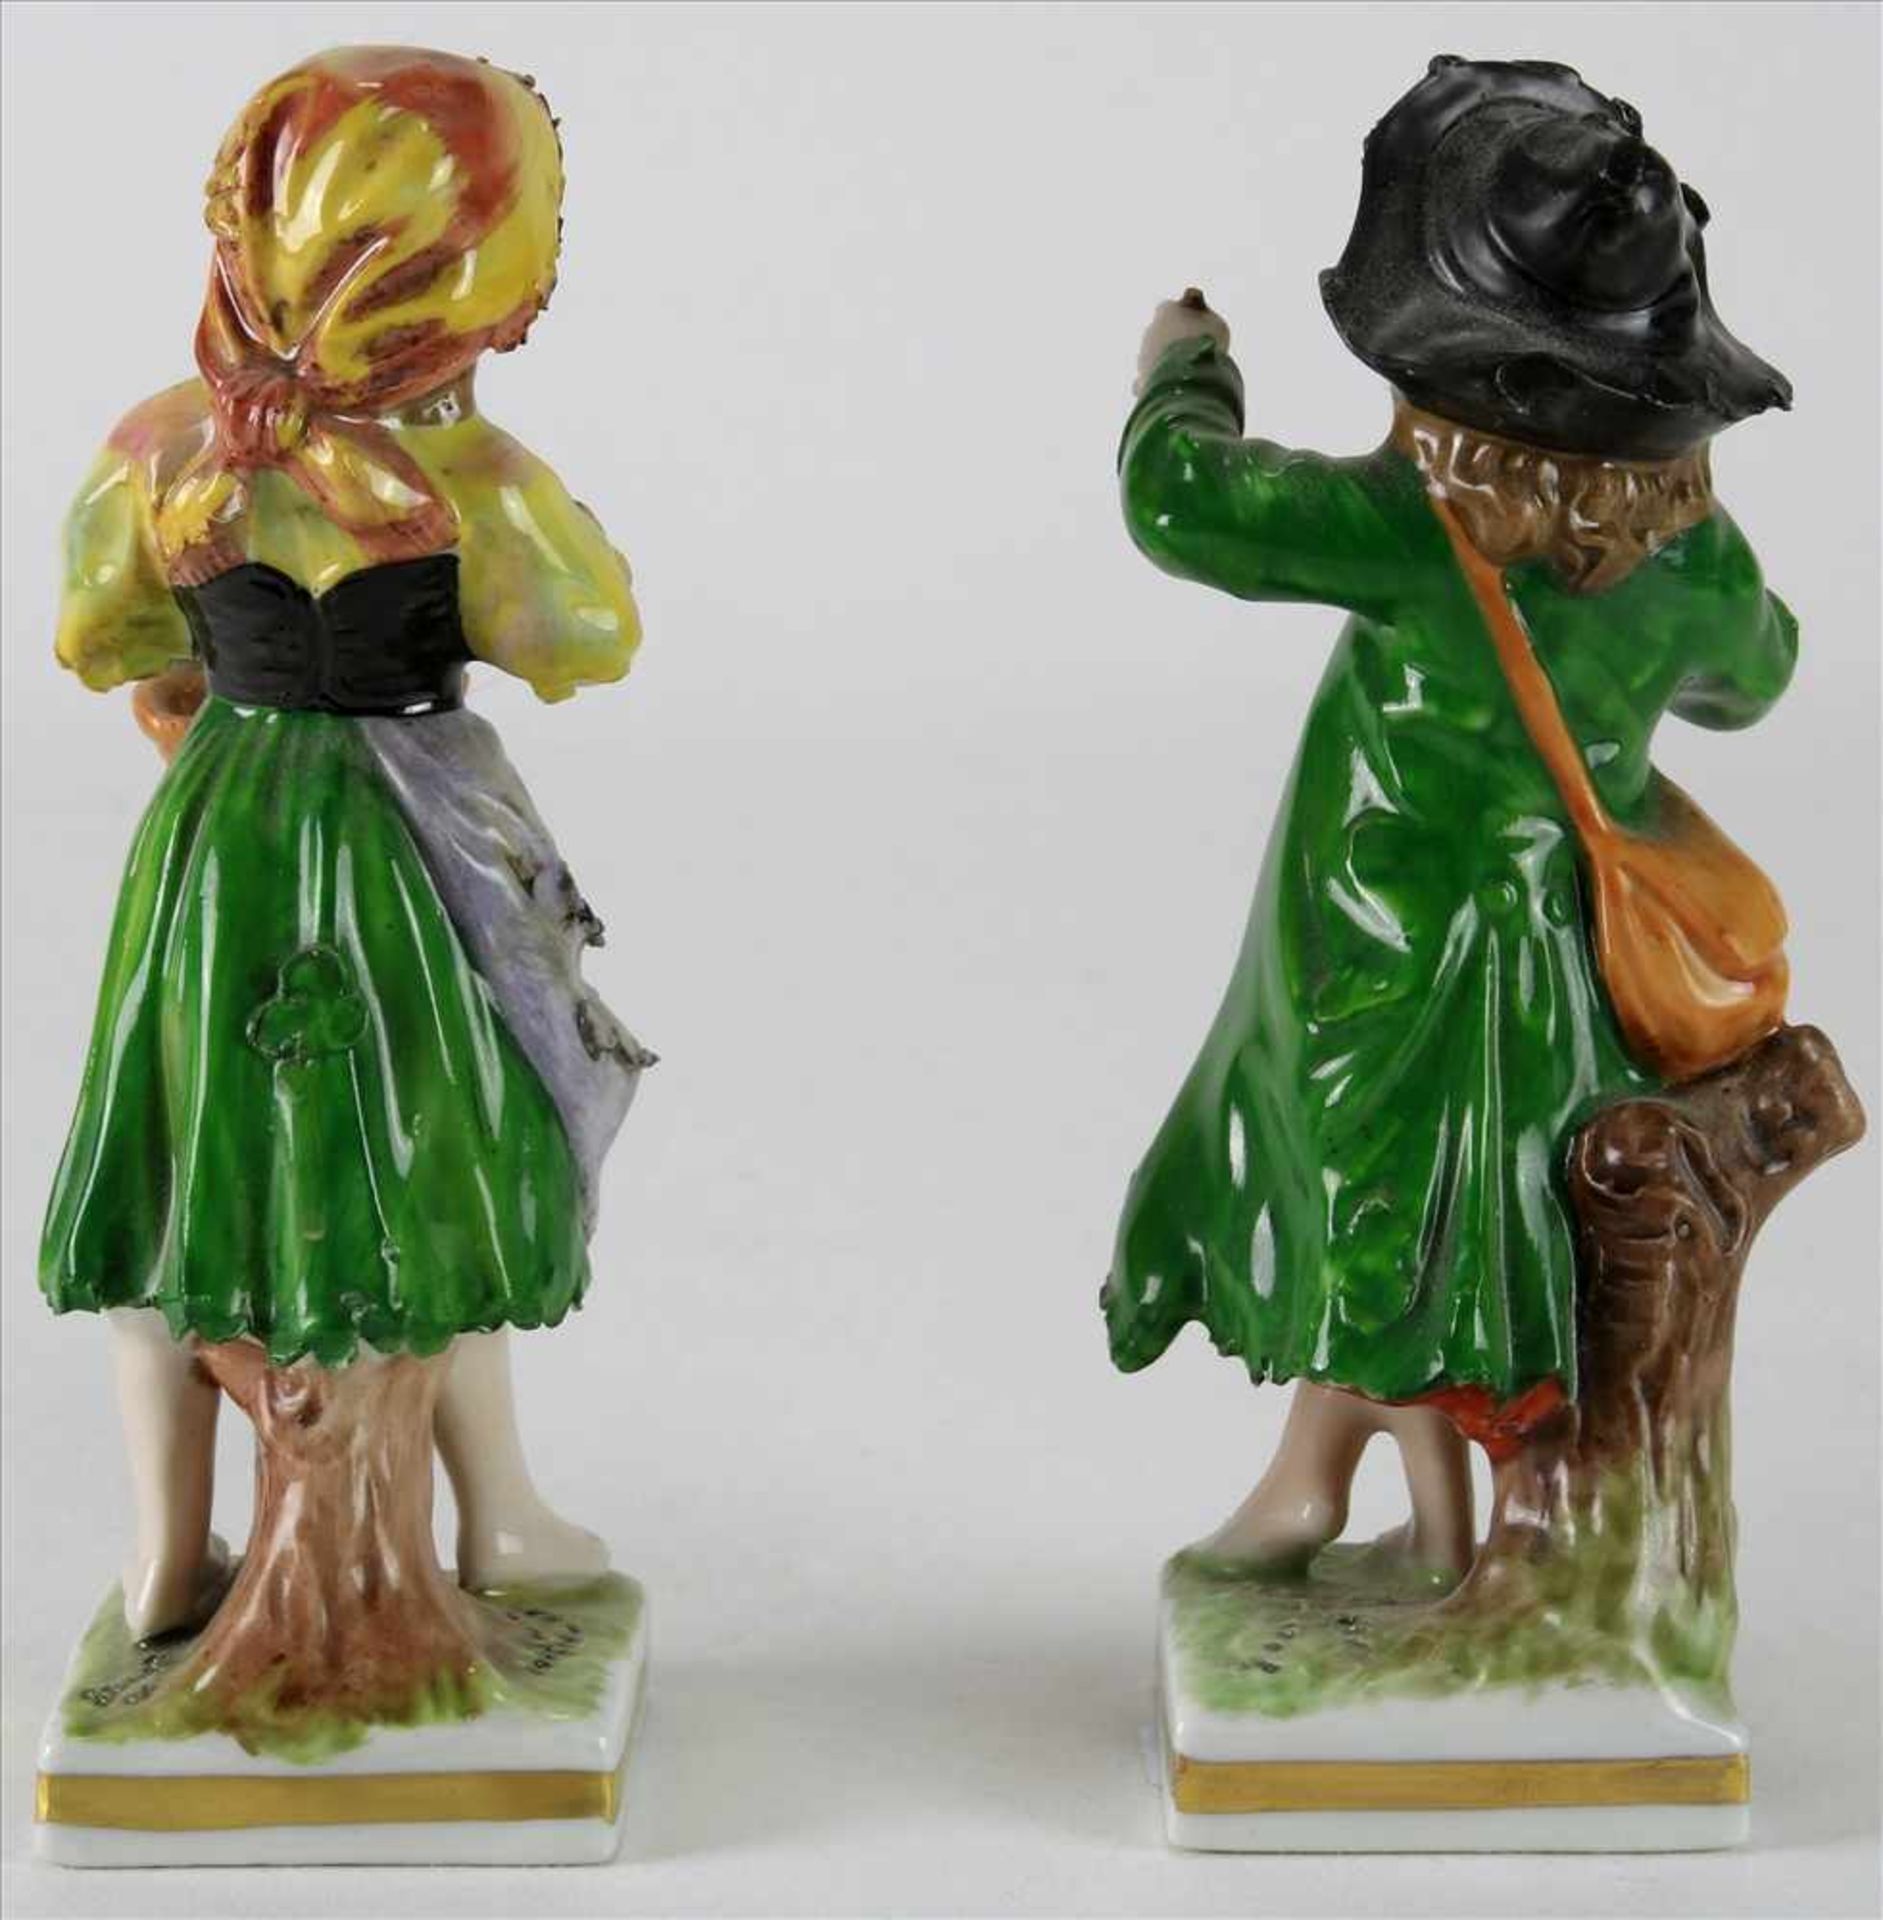 Paar PorzellanfigurenRudolstadt um 1900. Junge mit Äpfeln und Mädchen mit Korb. Polychrome Staffage. - Bild 2 aus 5